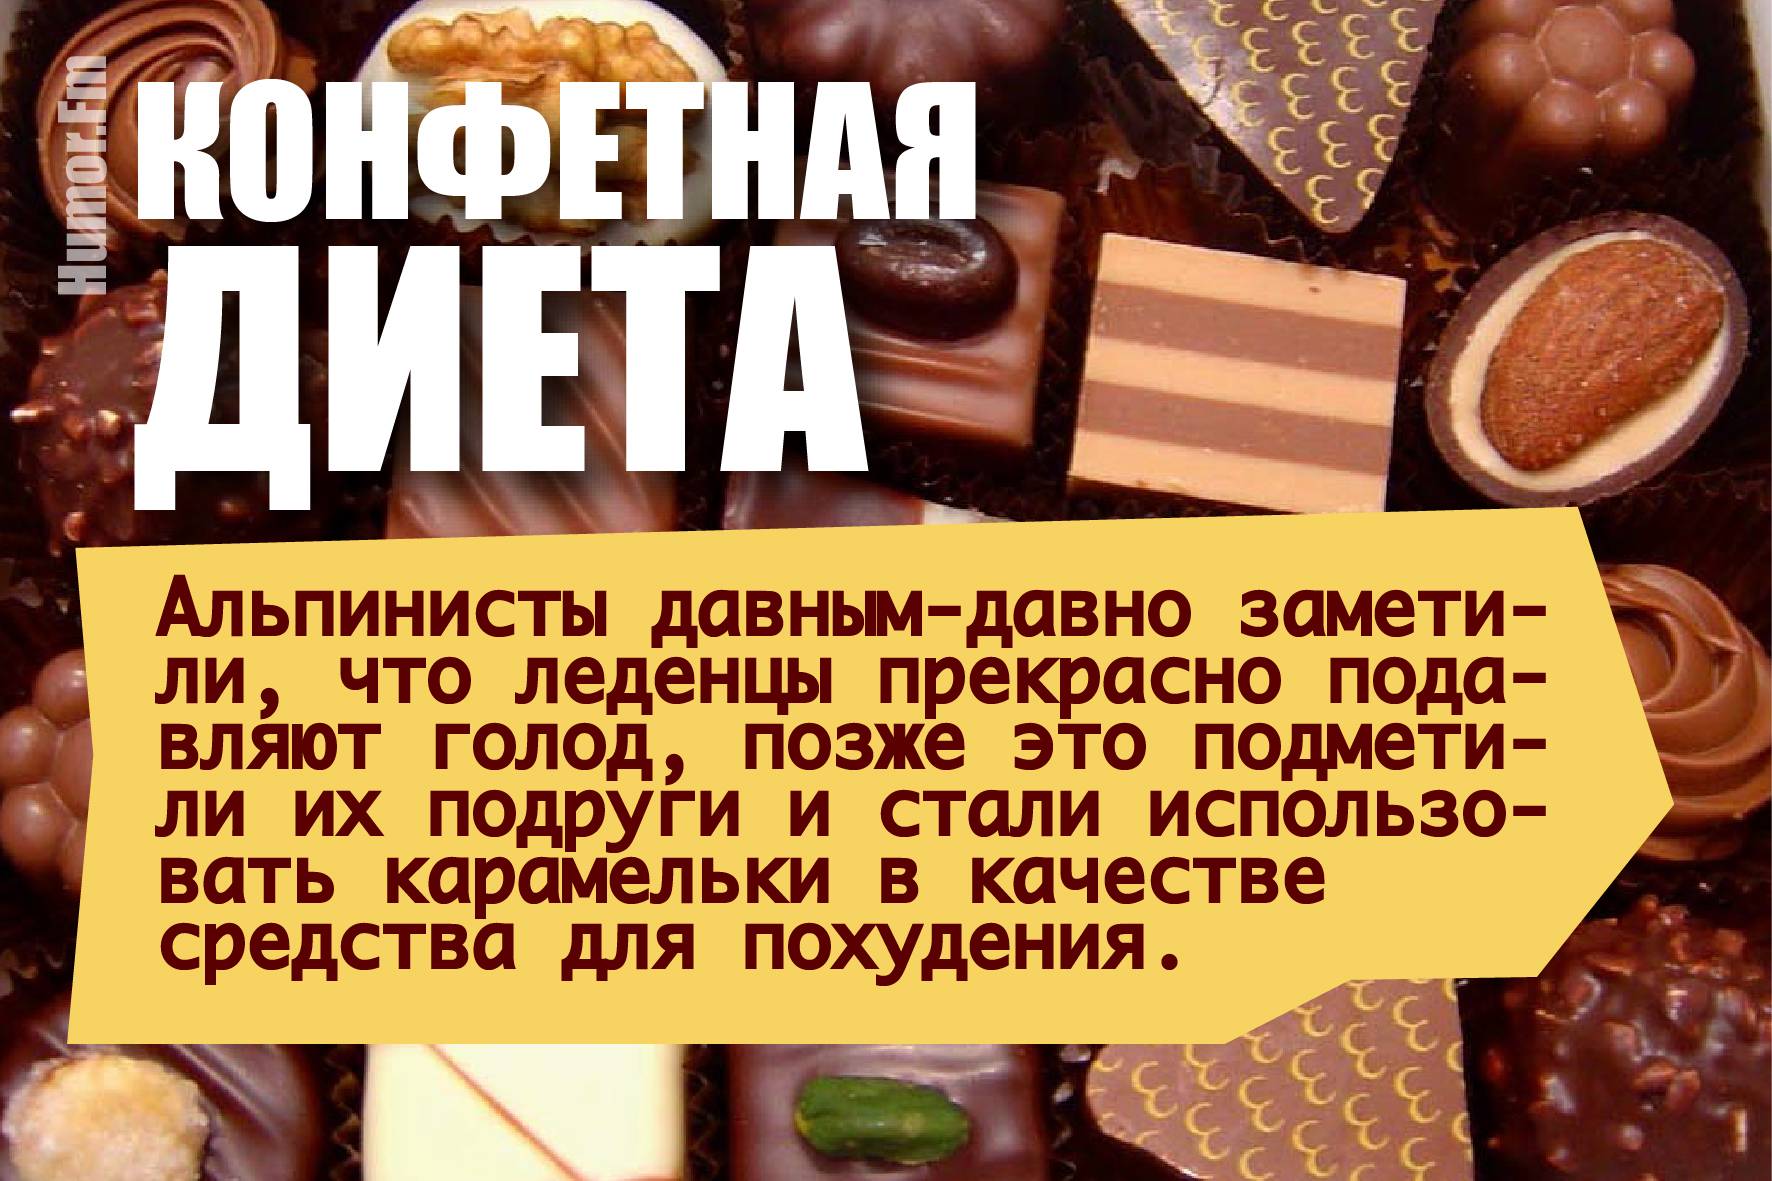 Шоколадная диета: описание, меню, отзывы и результаты